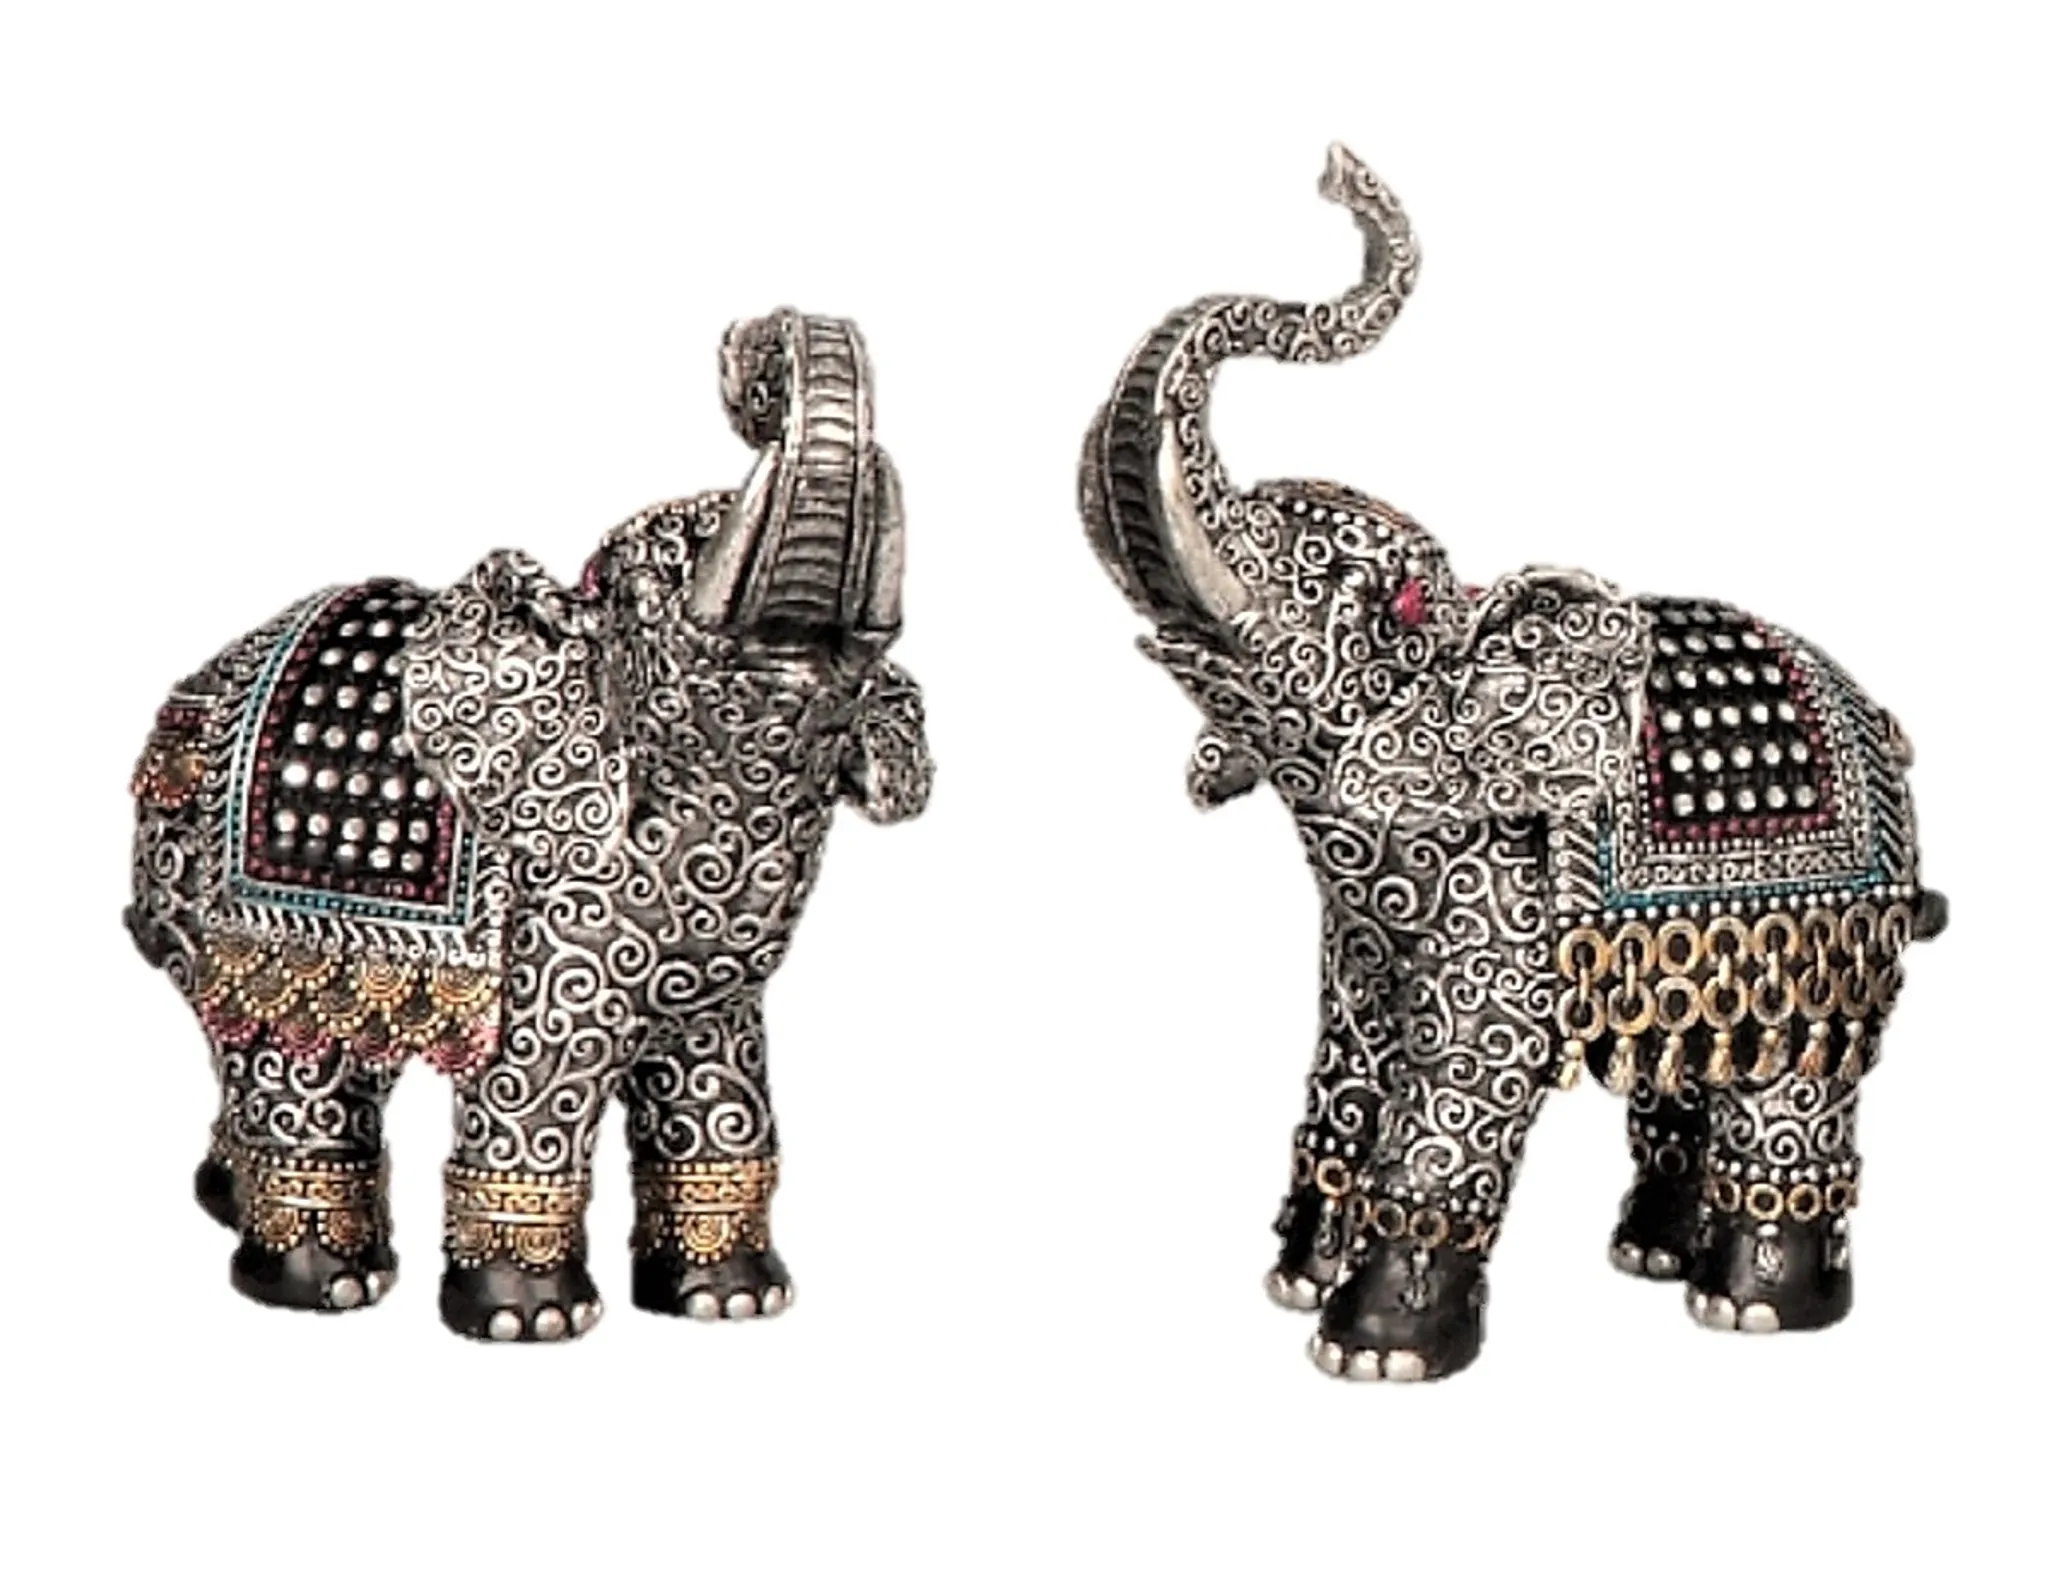 2 Elefanten Dekofiguren asiatische je Tierfiguren 16 cm